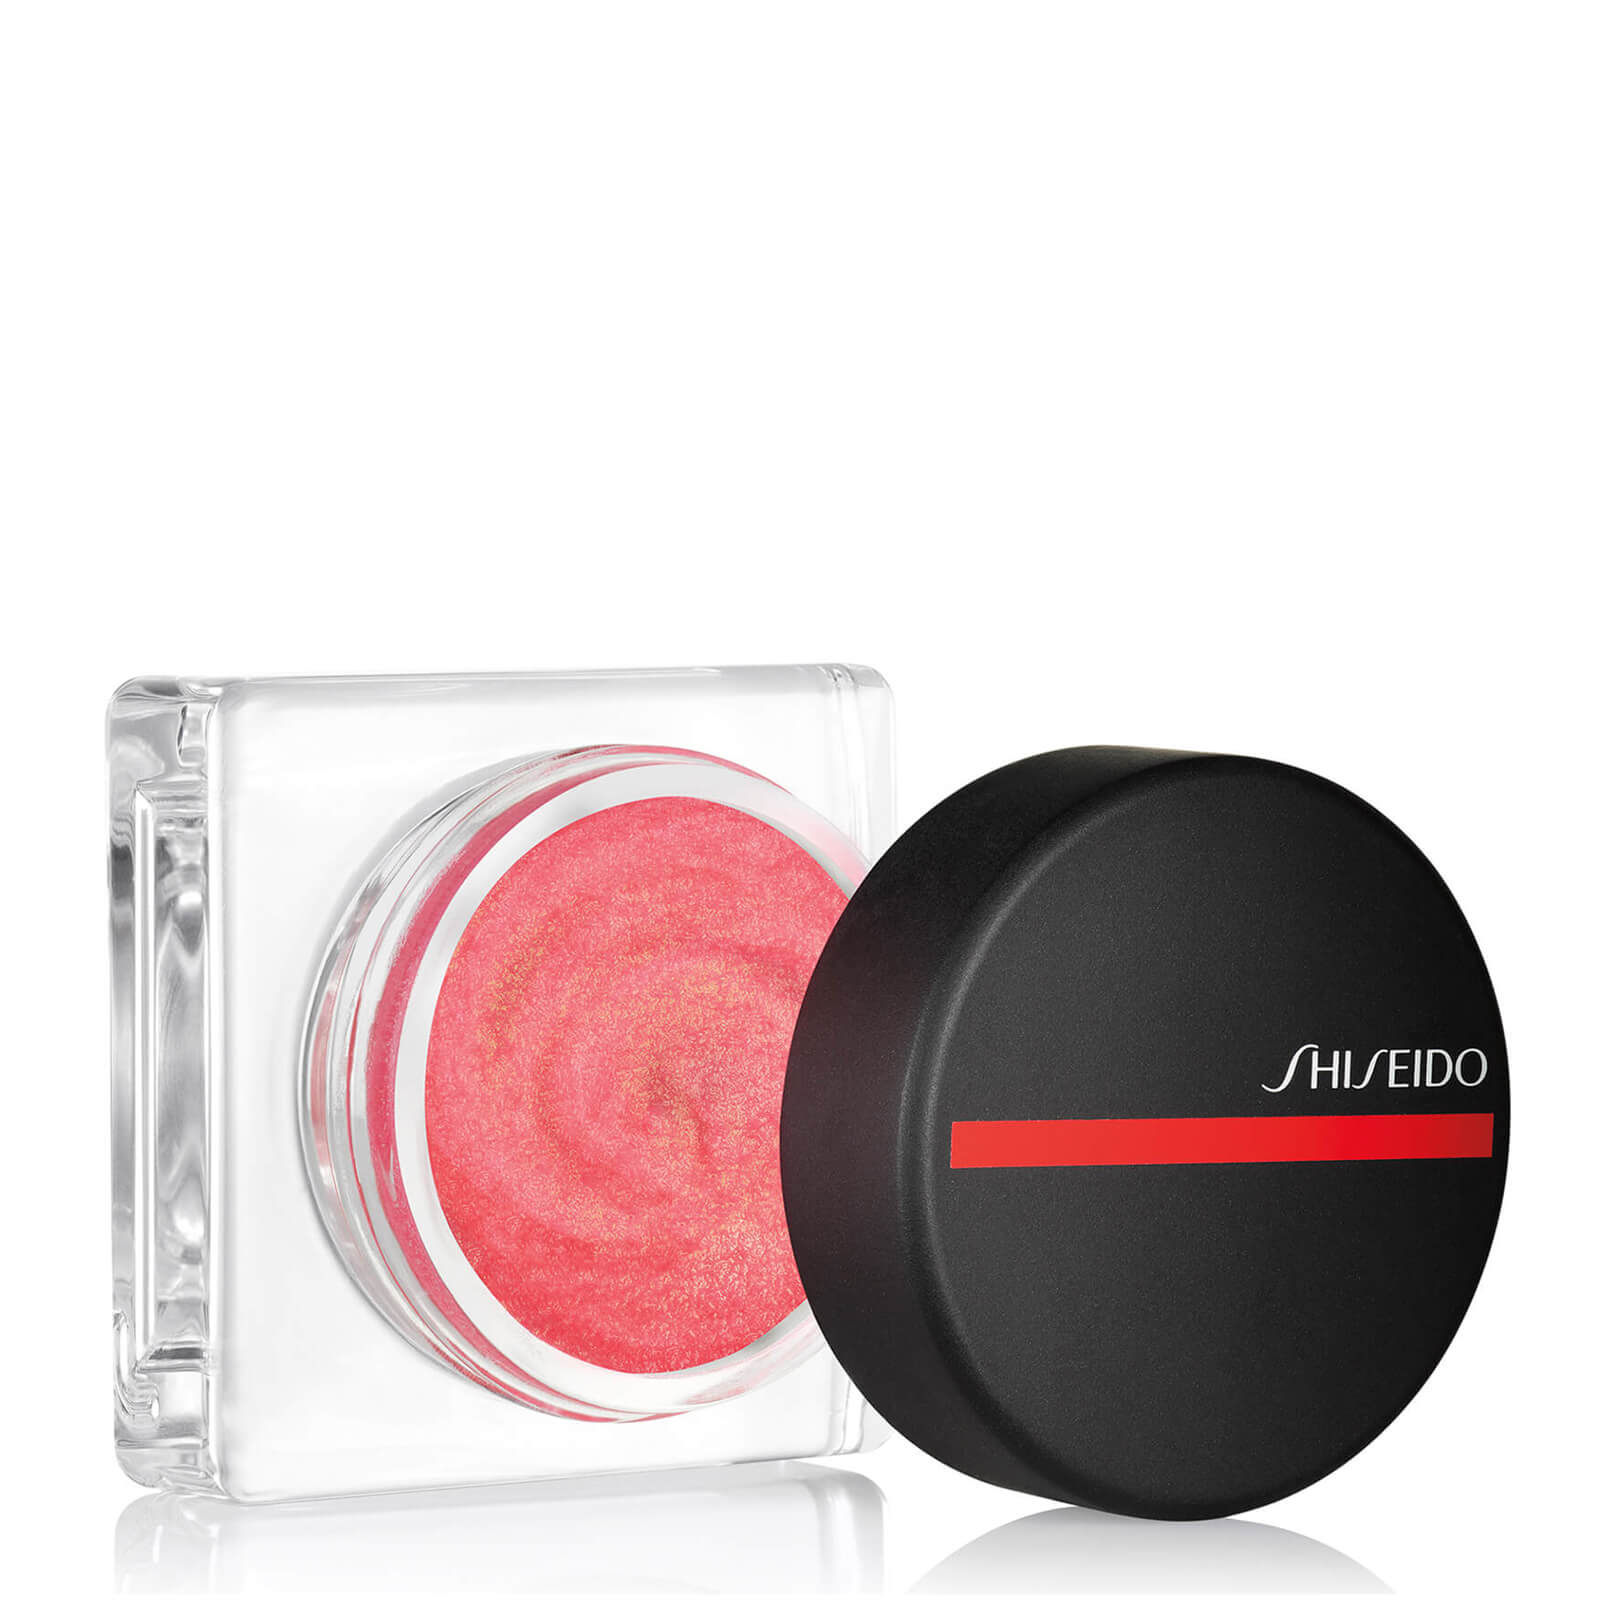 Colorete en polvo Minimalist de Shiseido (varios tonos)